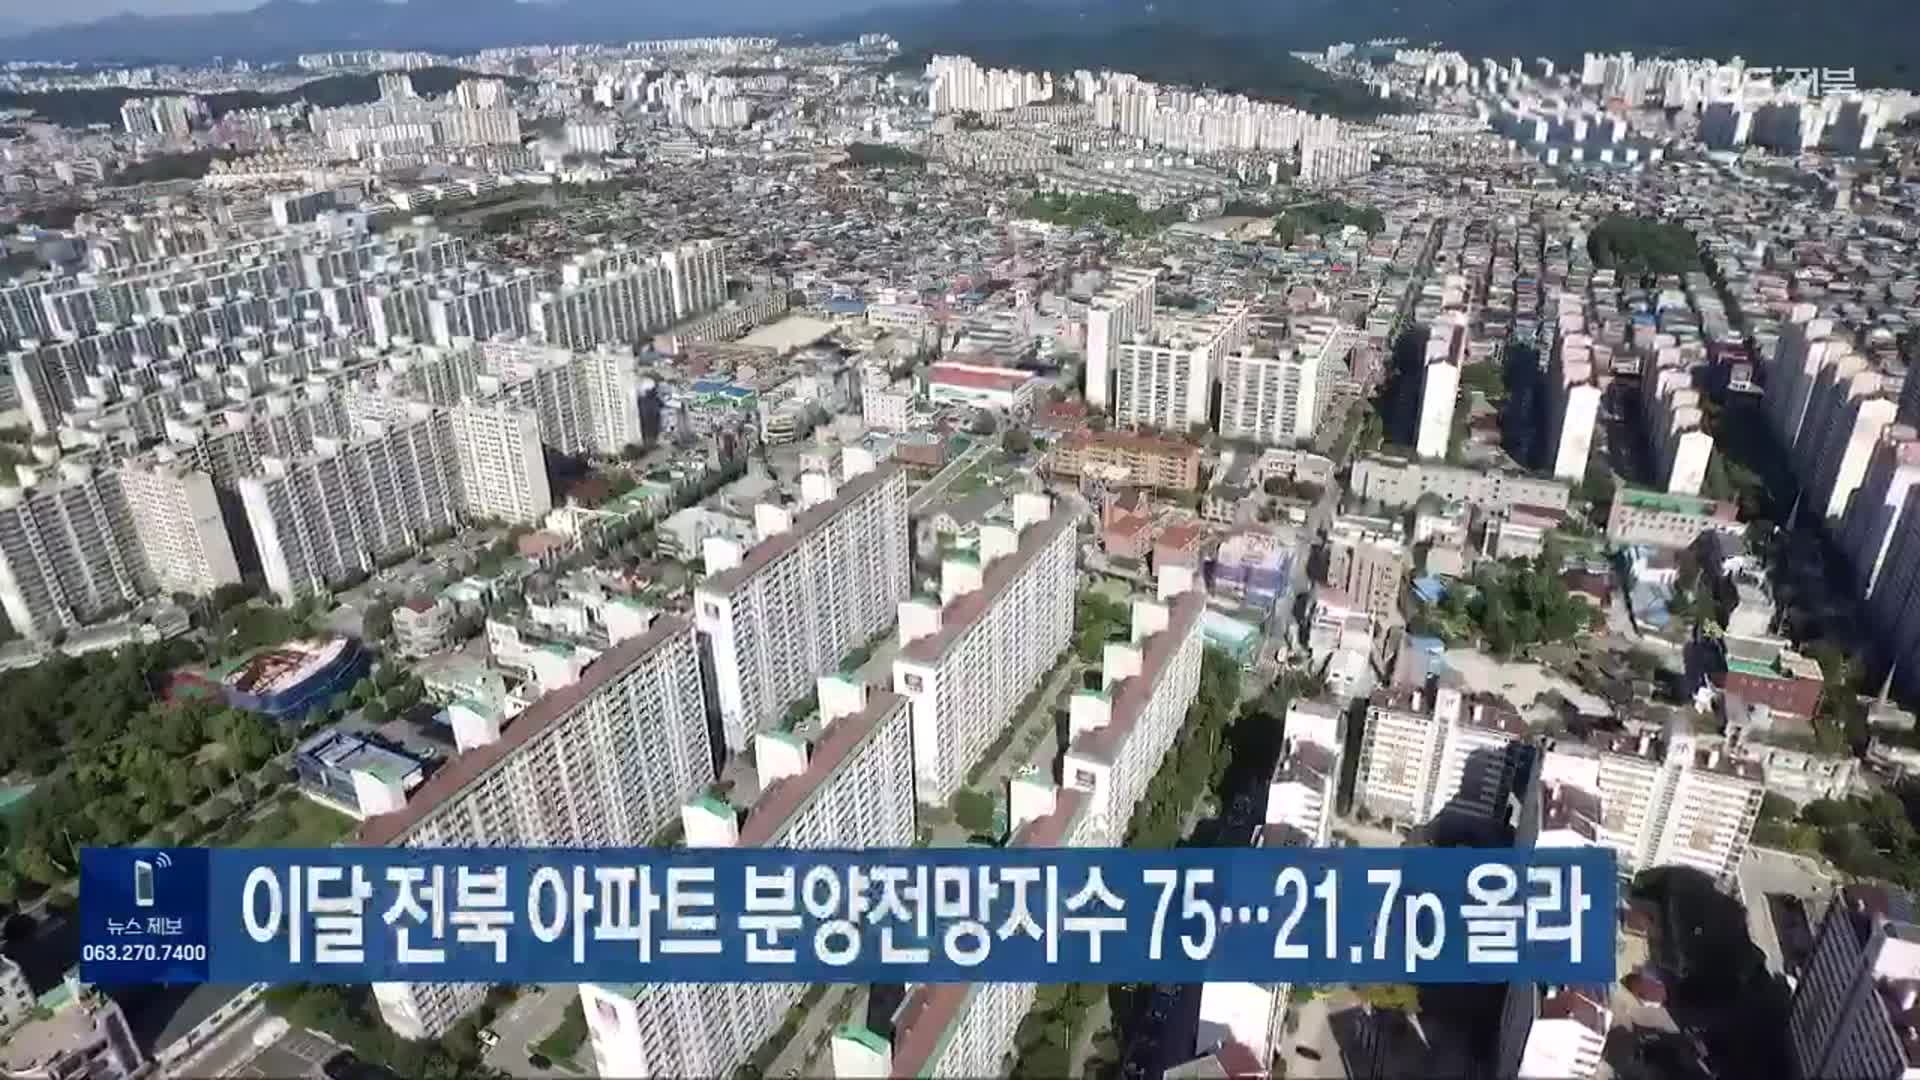 이달 전북 아파트 분양전망지수 75…21.7p 올라